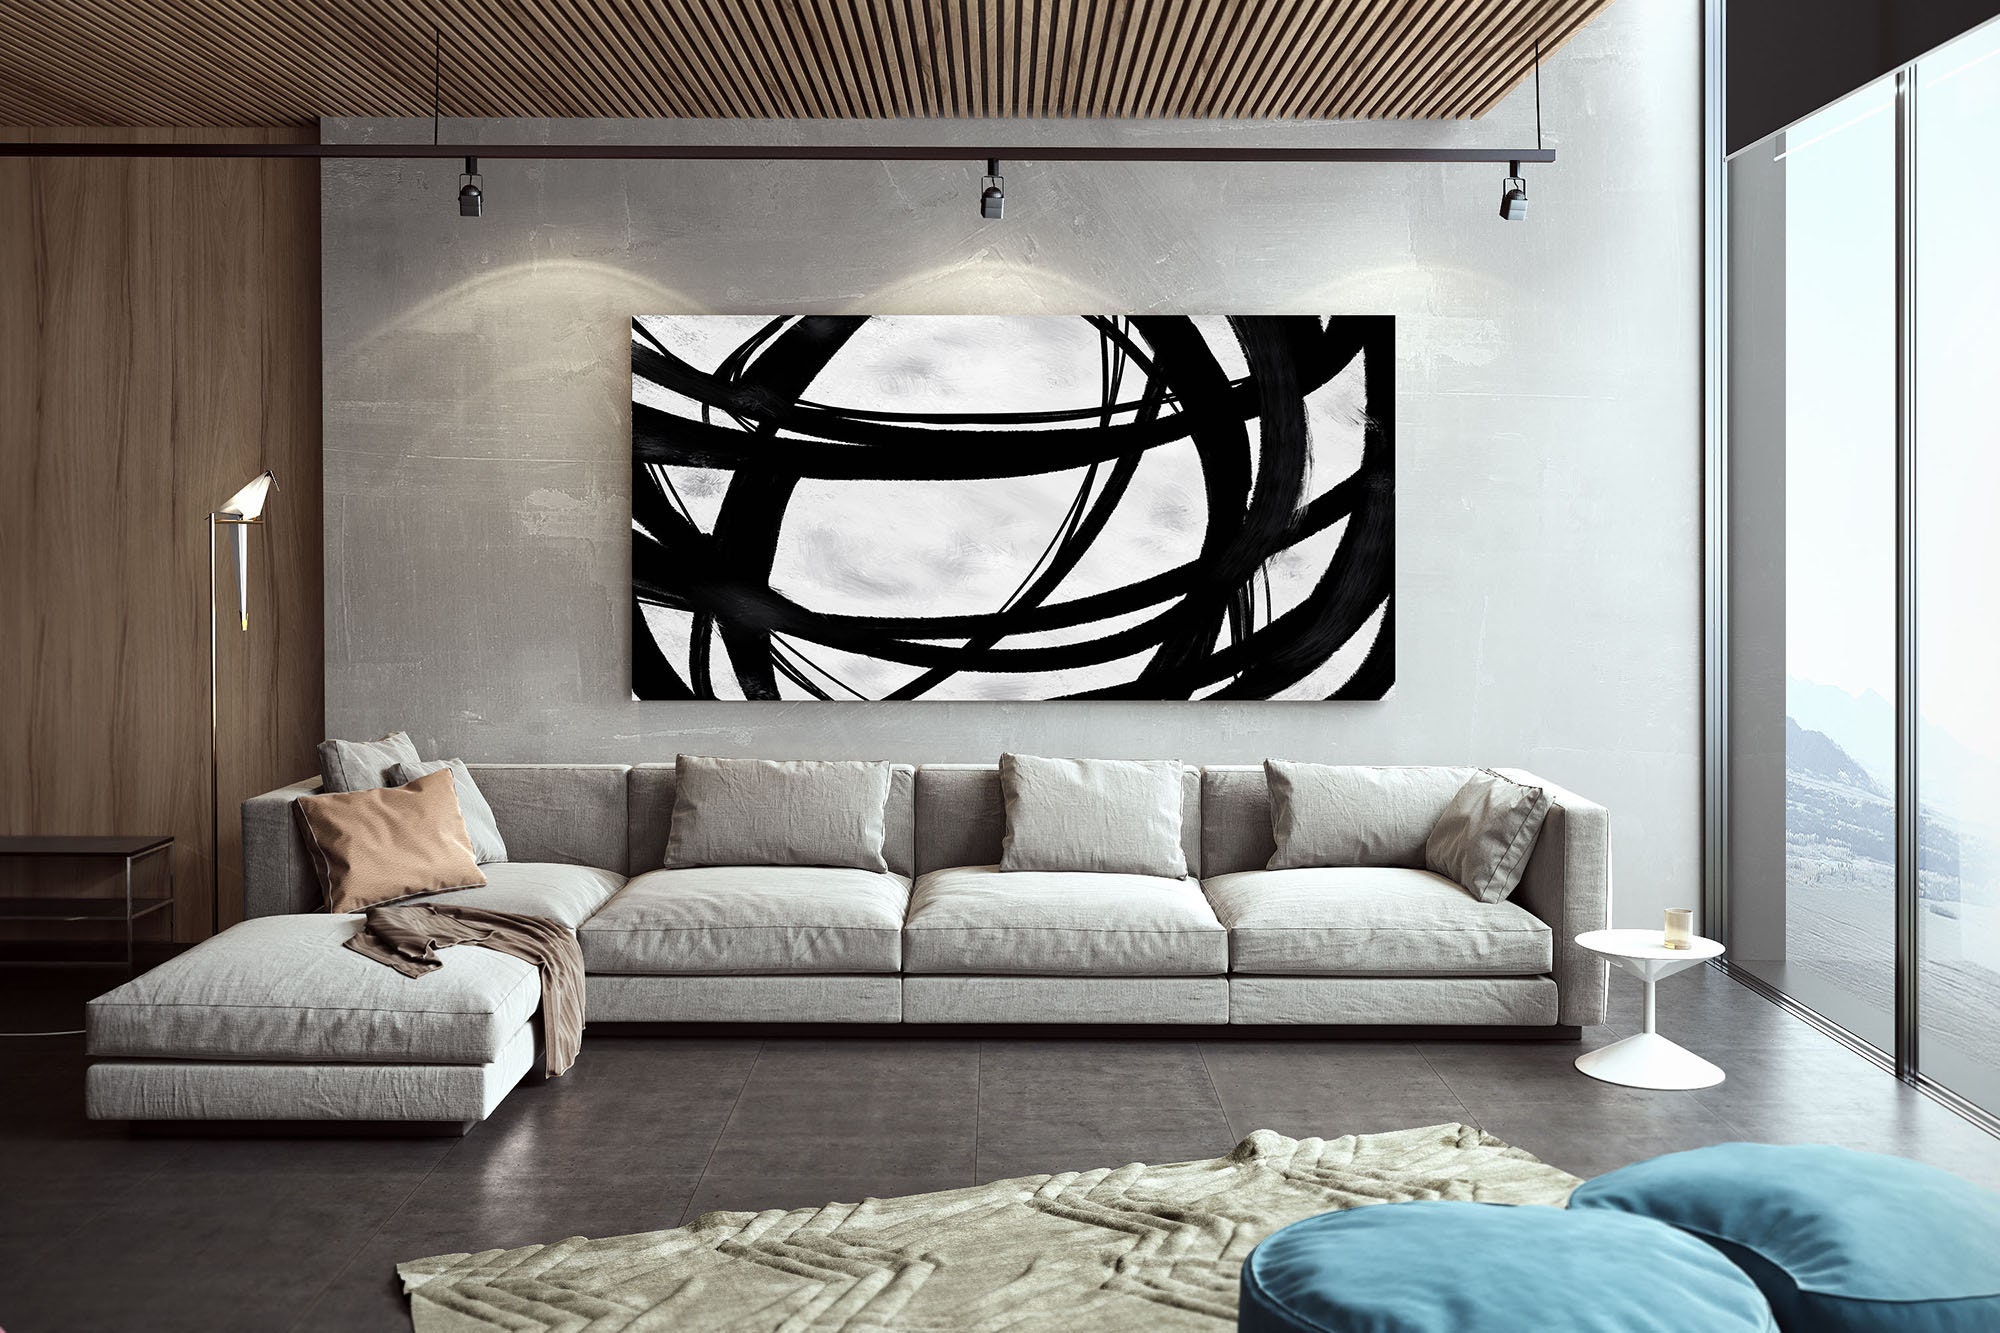 Extra Large Wall Artminimal Abstract Paintingcontemporary | Etsy